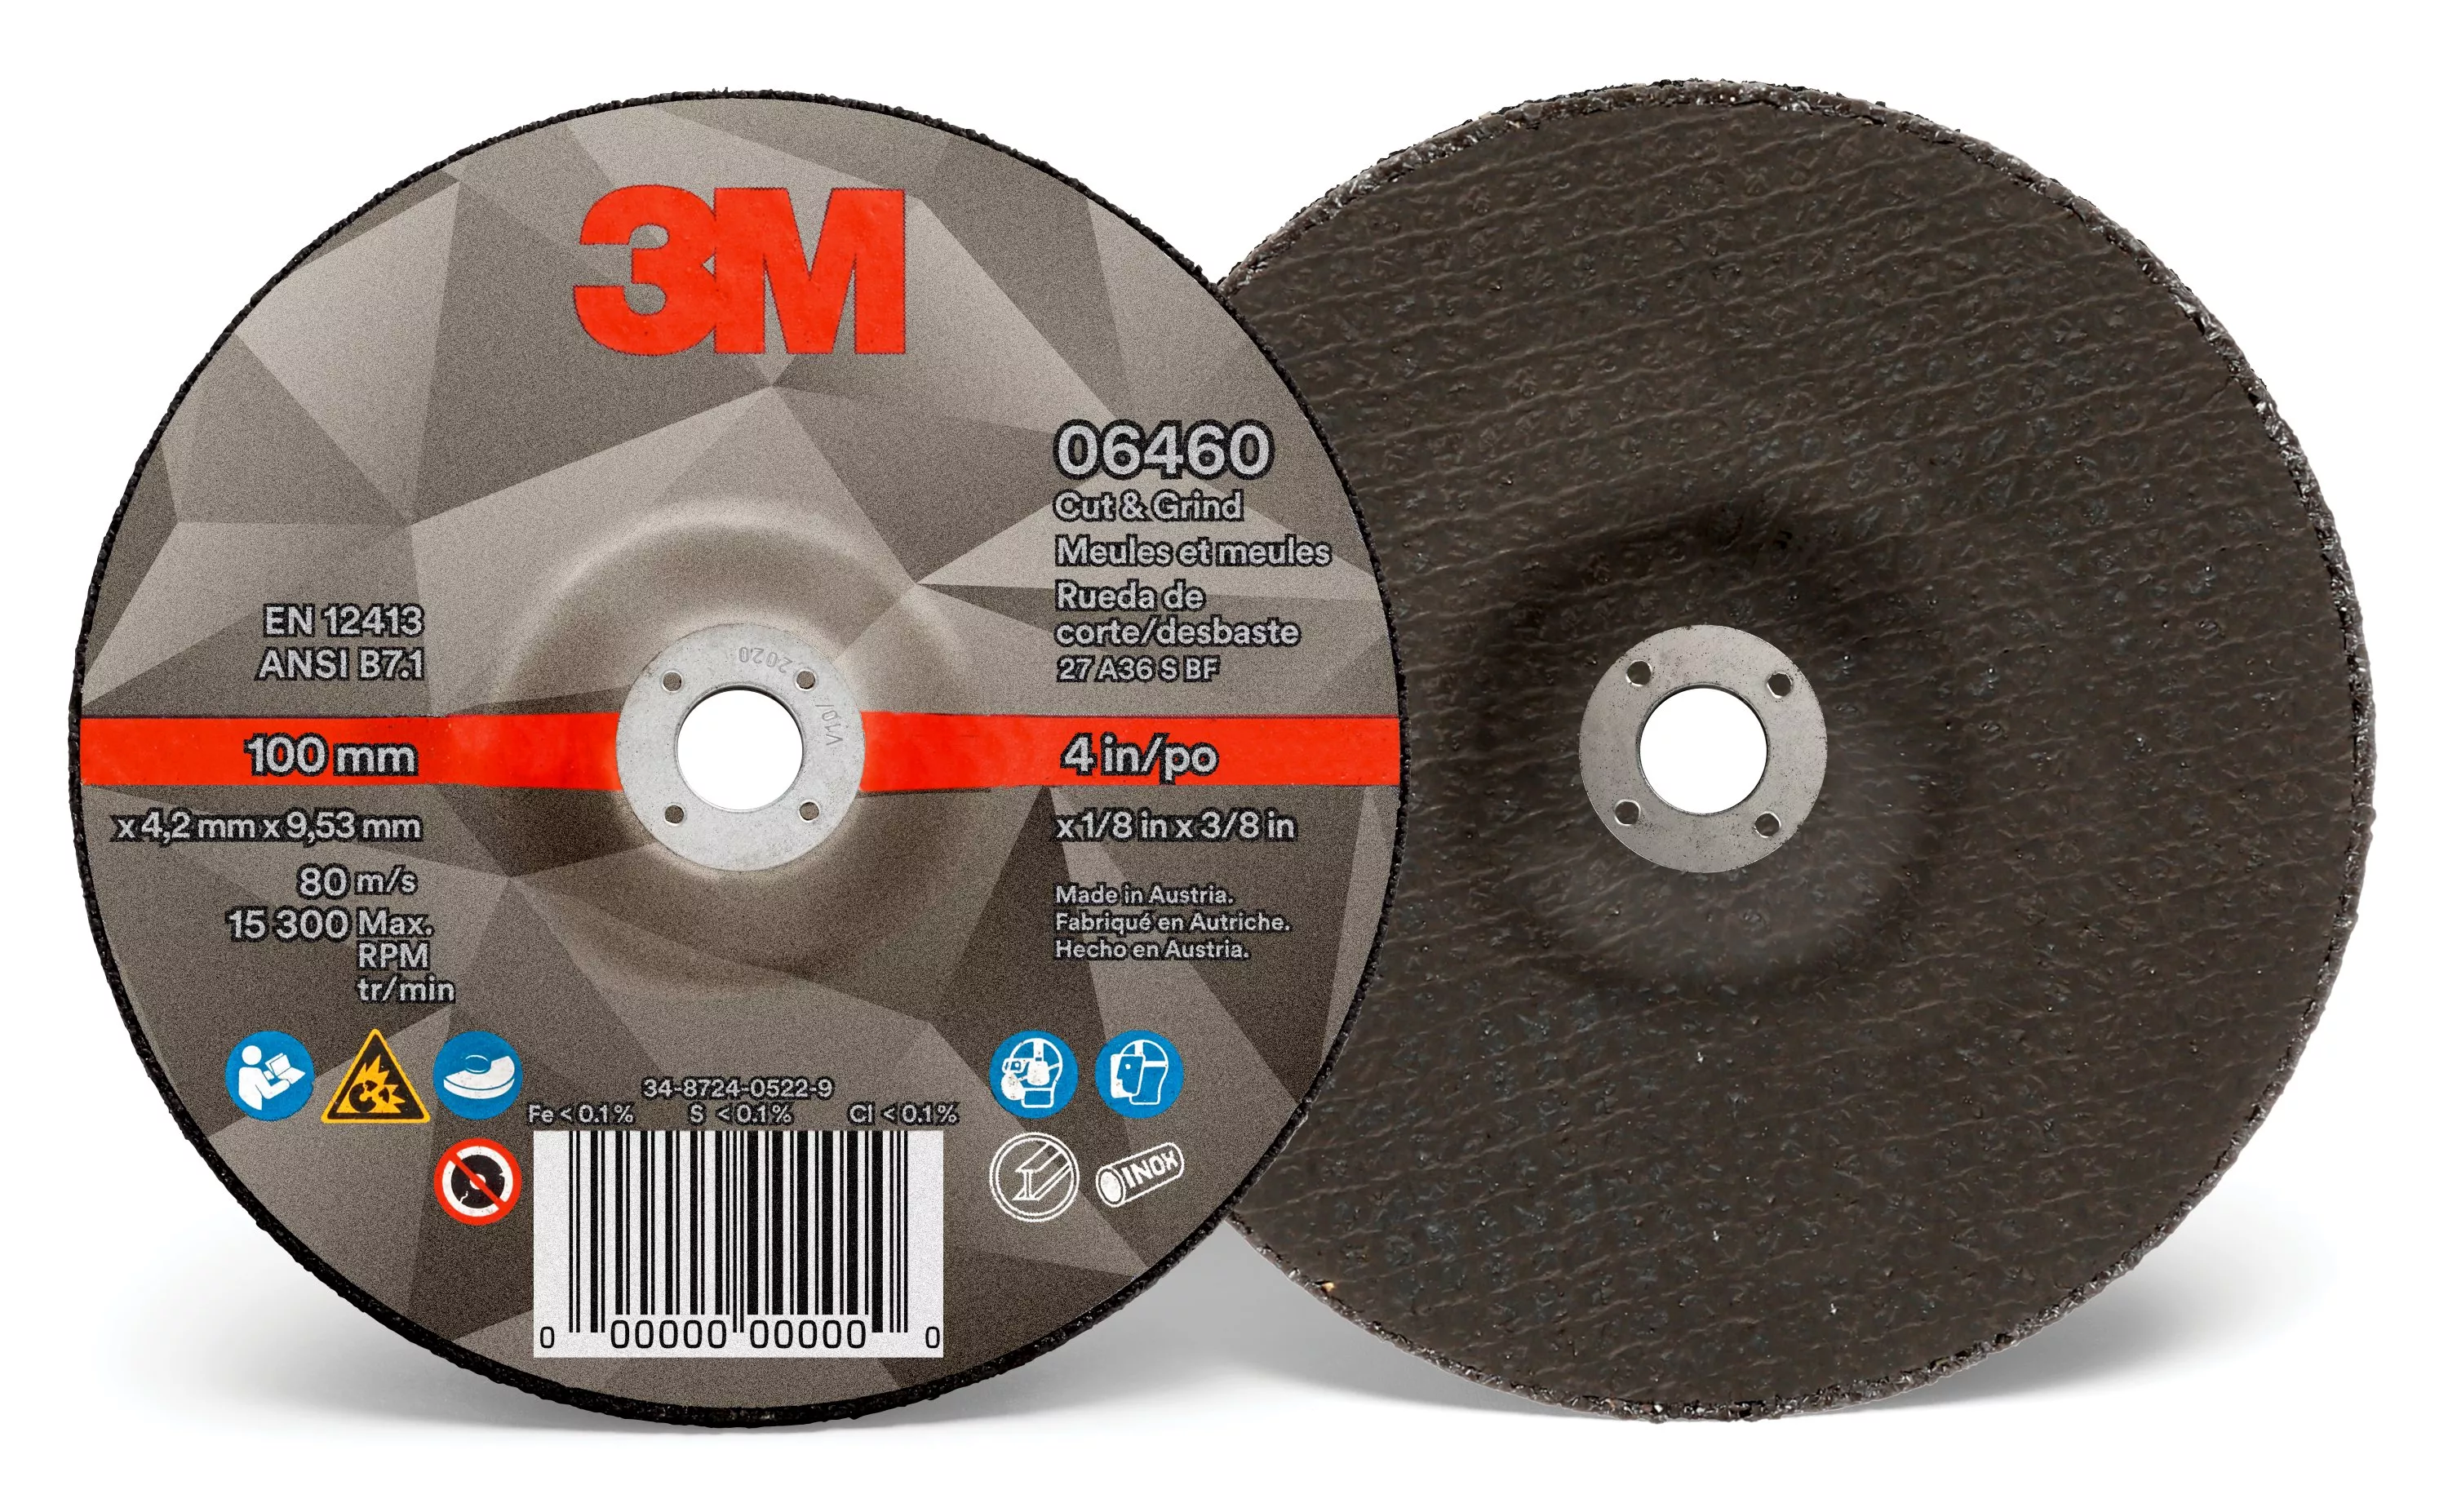 3M™ Cut & Grind Wheel, 06460, Type 27, 4 in x 1/8 in x 3/8 in, 10/Pac,
20 ea/Case